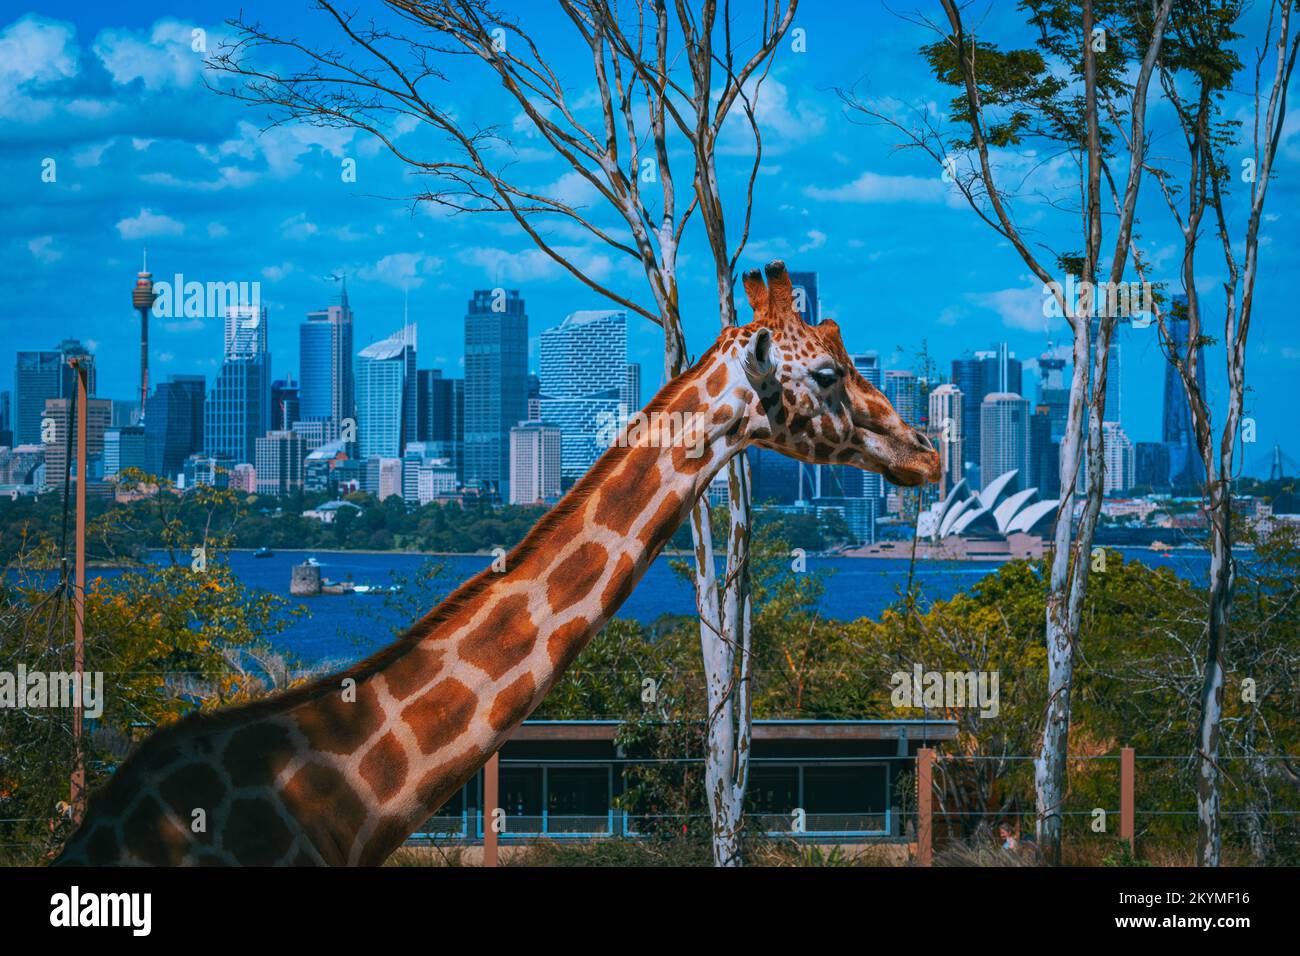 Vista sul teatro dell'opera di Sydney. Sydney, Australia: QUESTE SPLENDIDE immagini mostrano giraffe ed elefanti godendo della loro incredibile vista su Sydney da Foto Stock